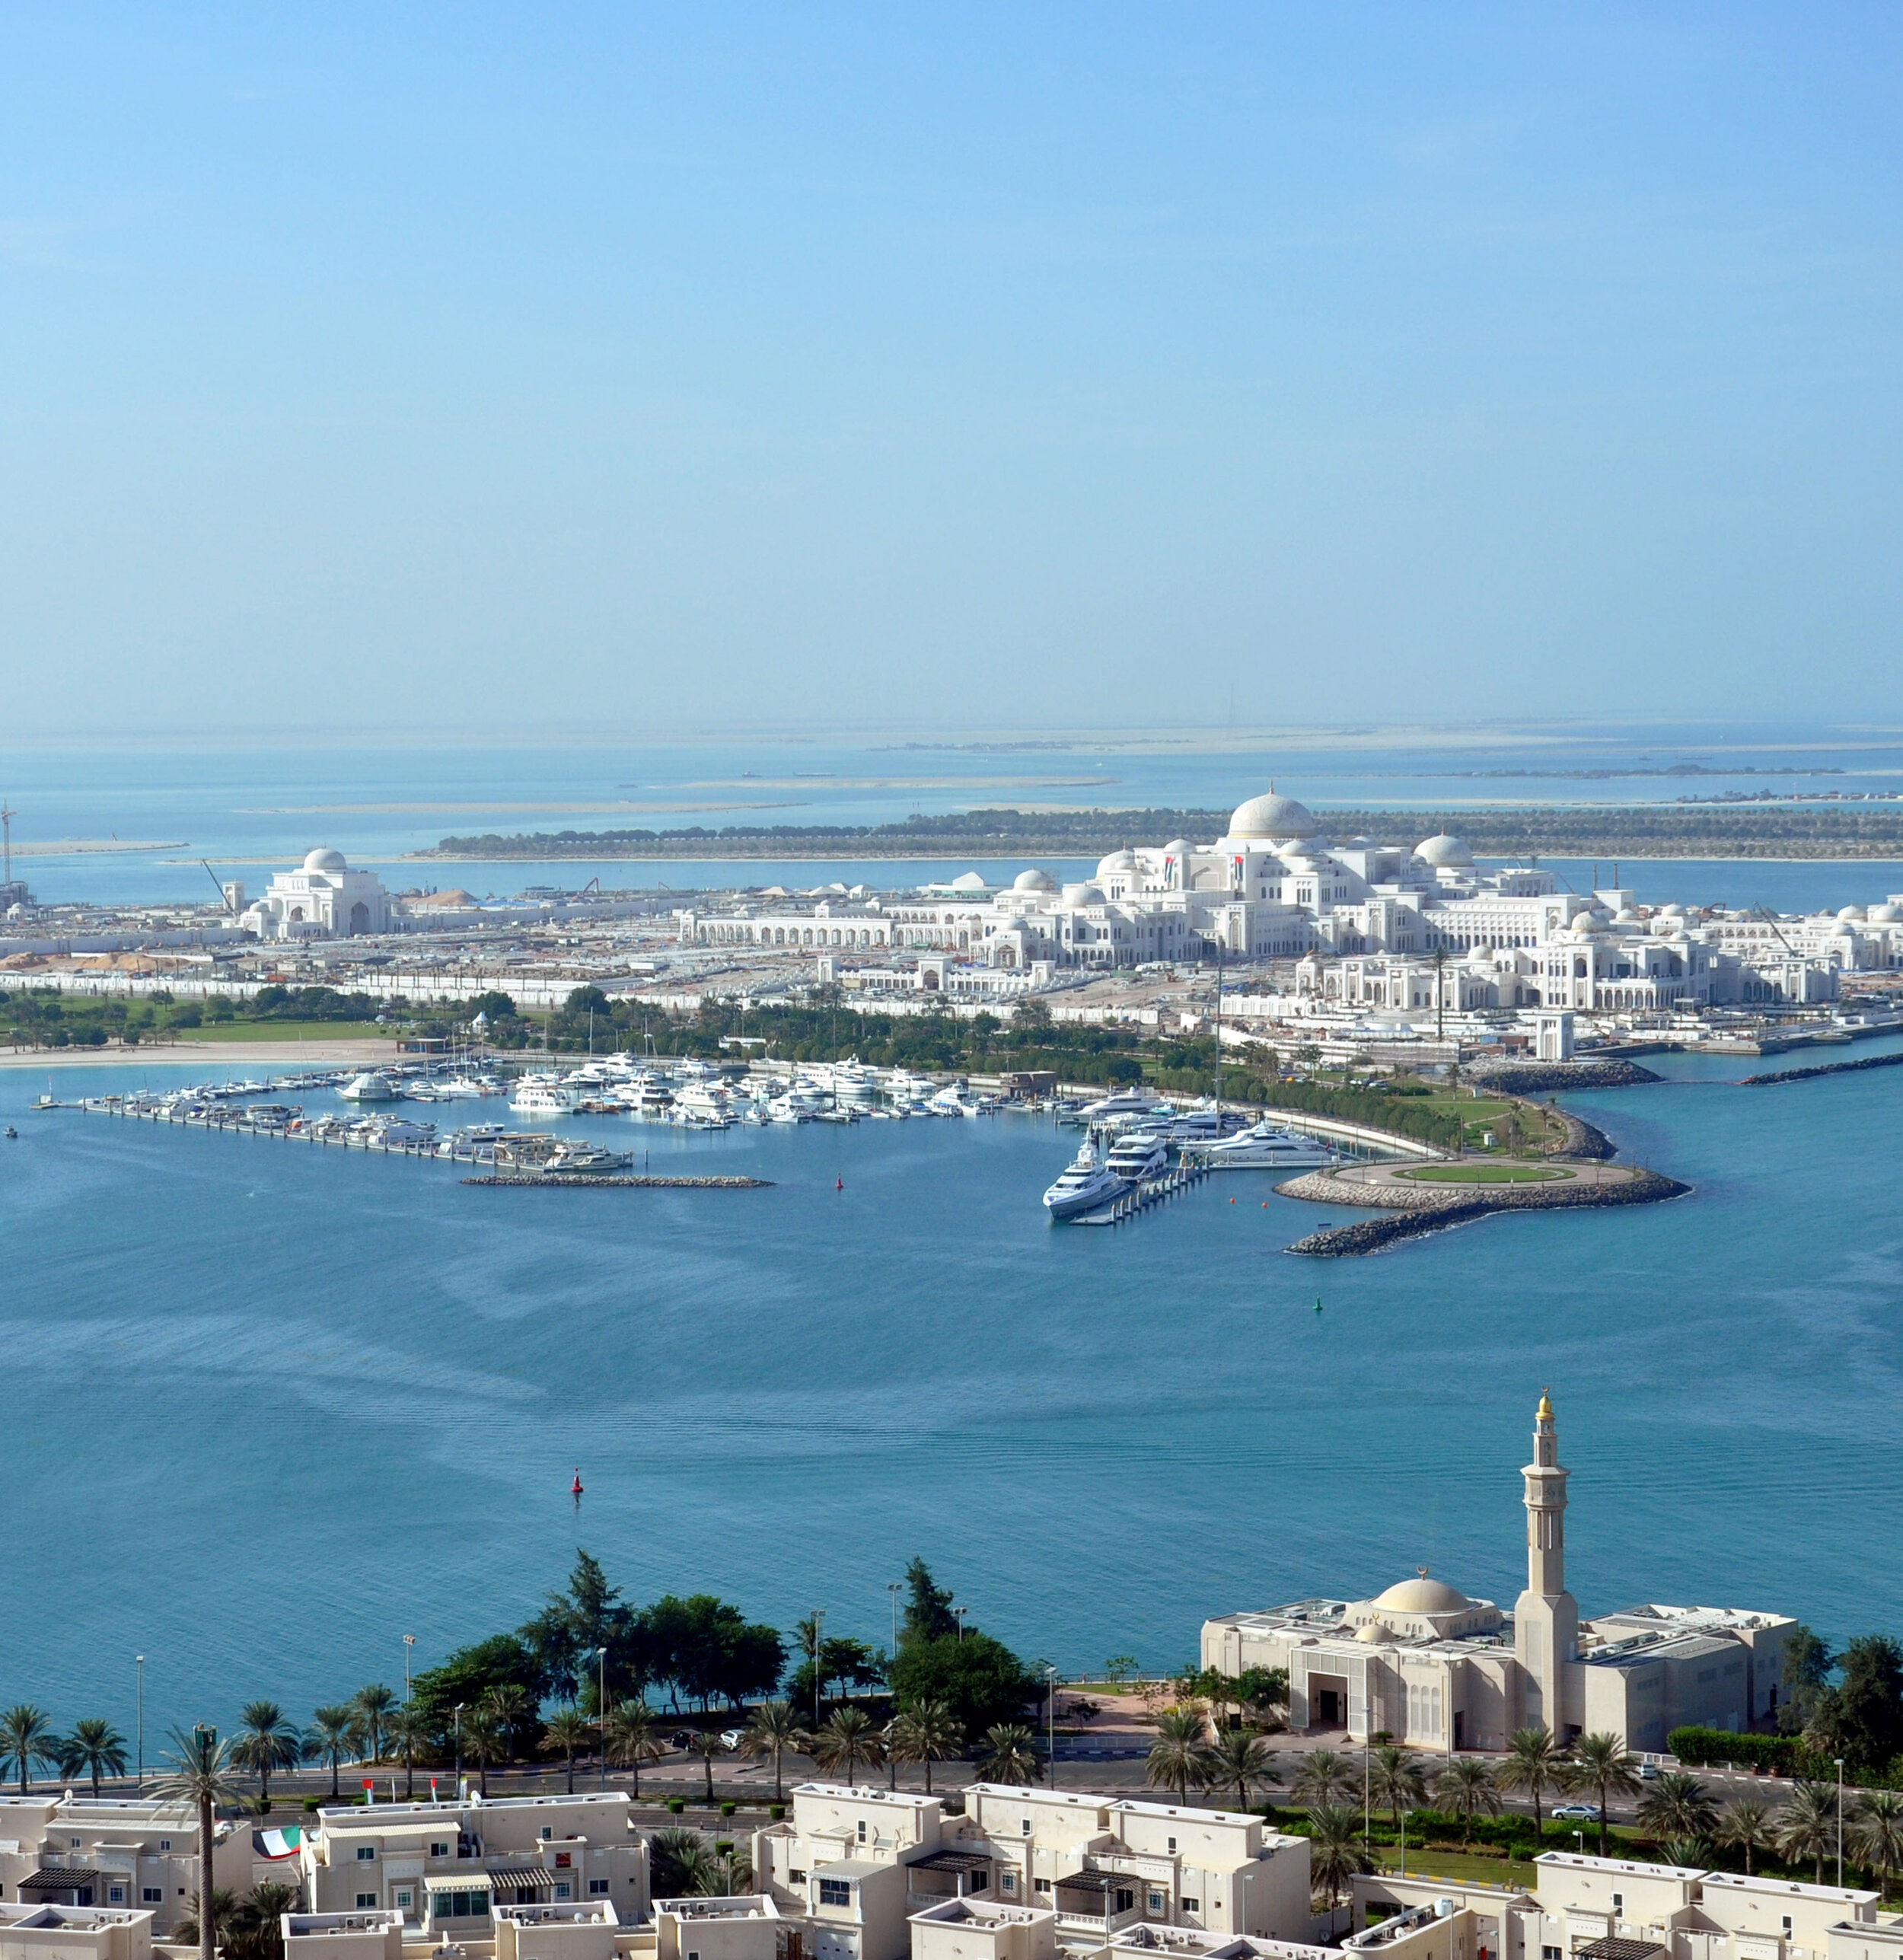 NDA-18. Abu Dhabi Emirates Palace Marina (1).jpg